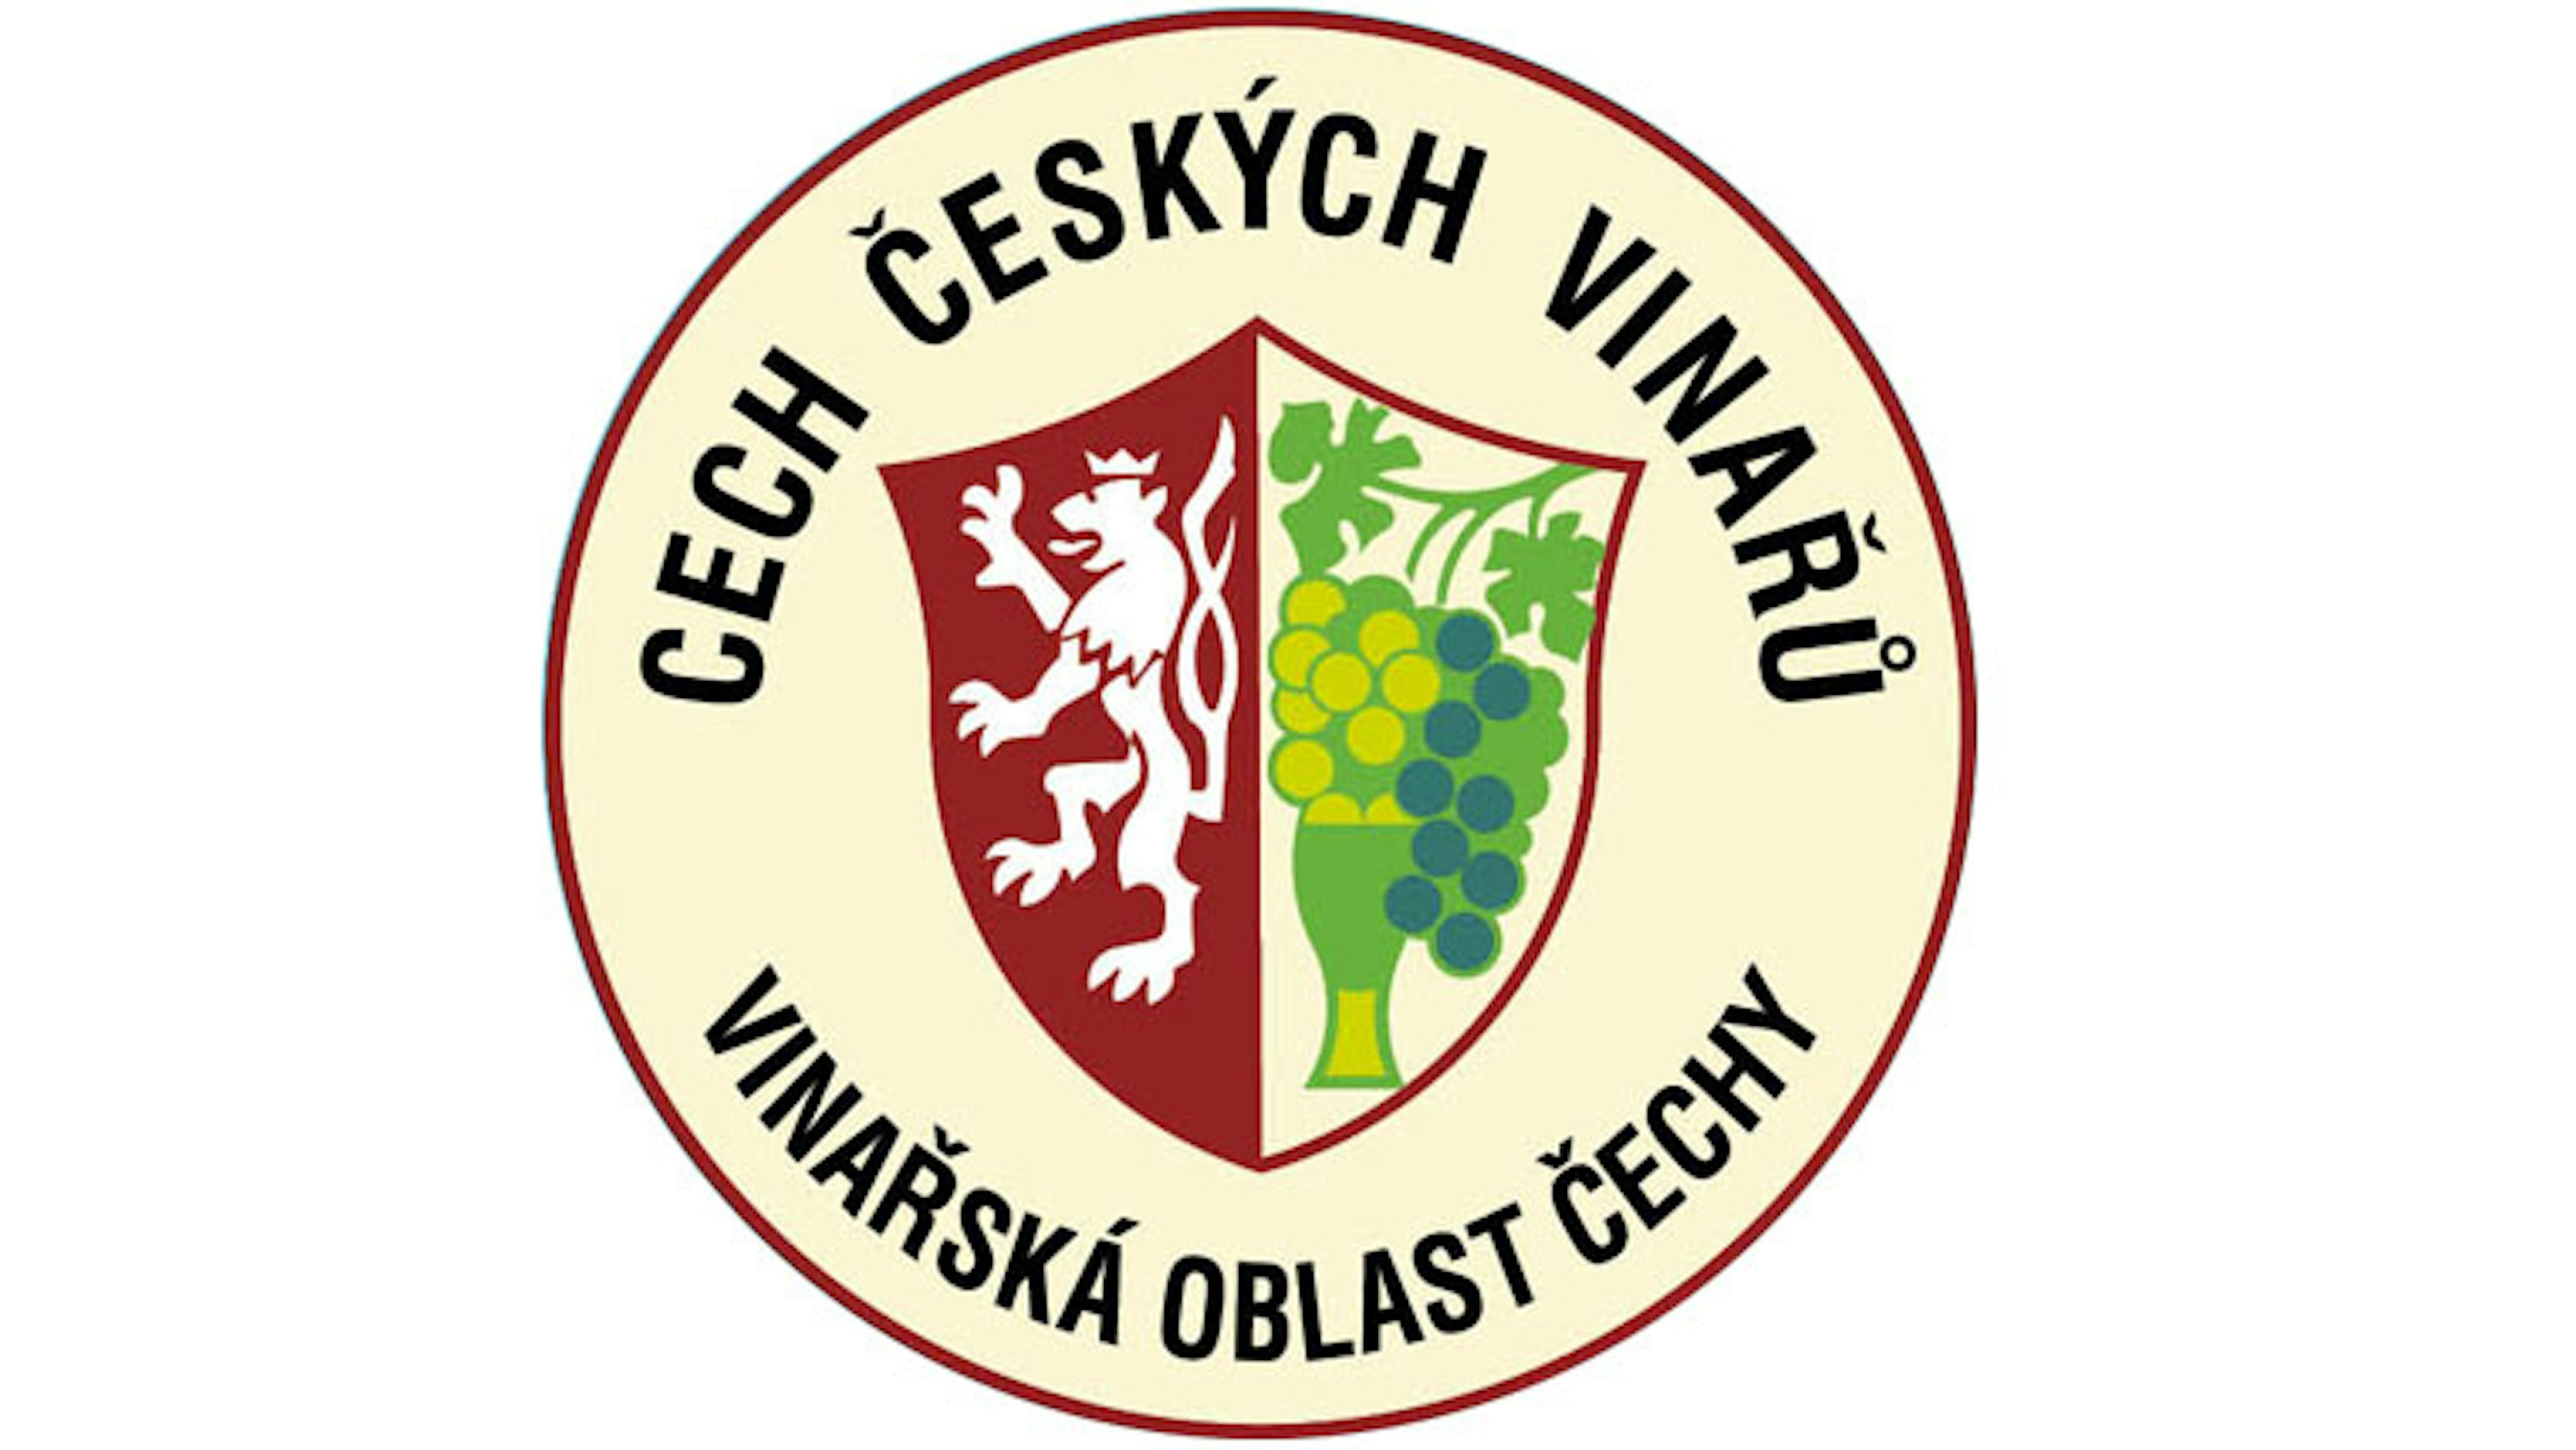 Cech českých vinařů logo